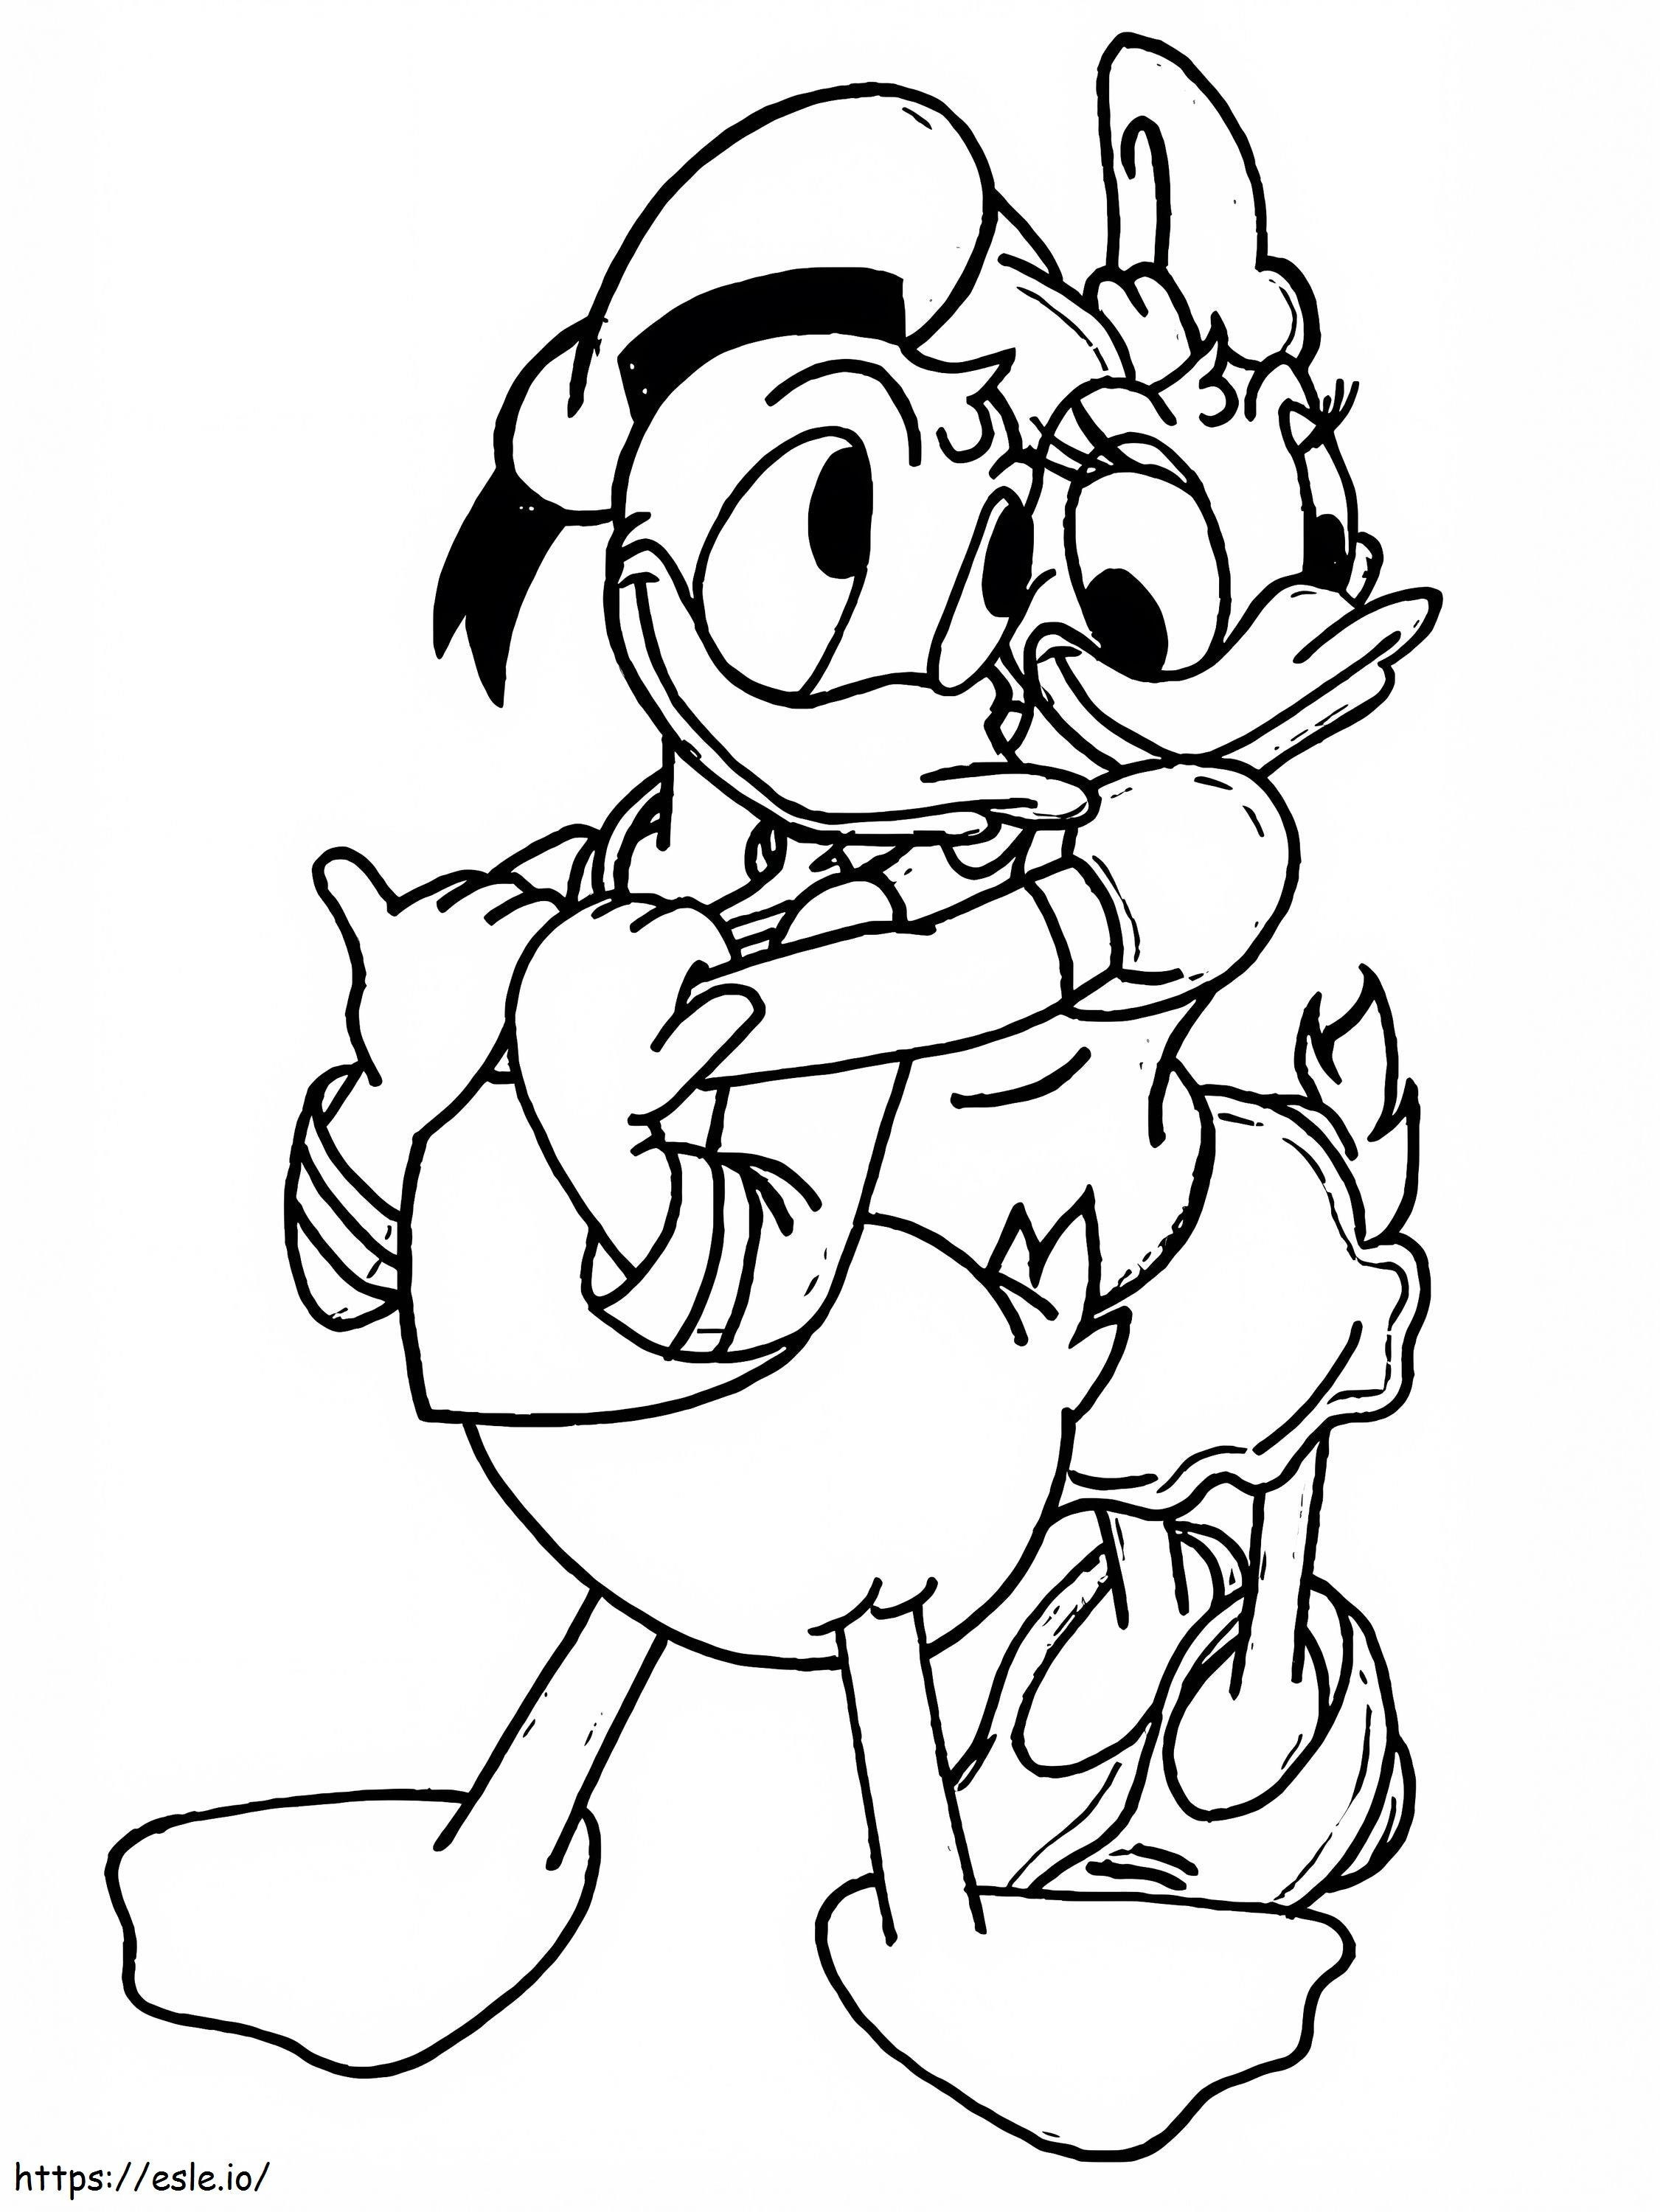 Donald met Daisy kleurplaat kleurplaat